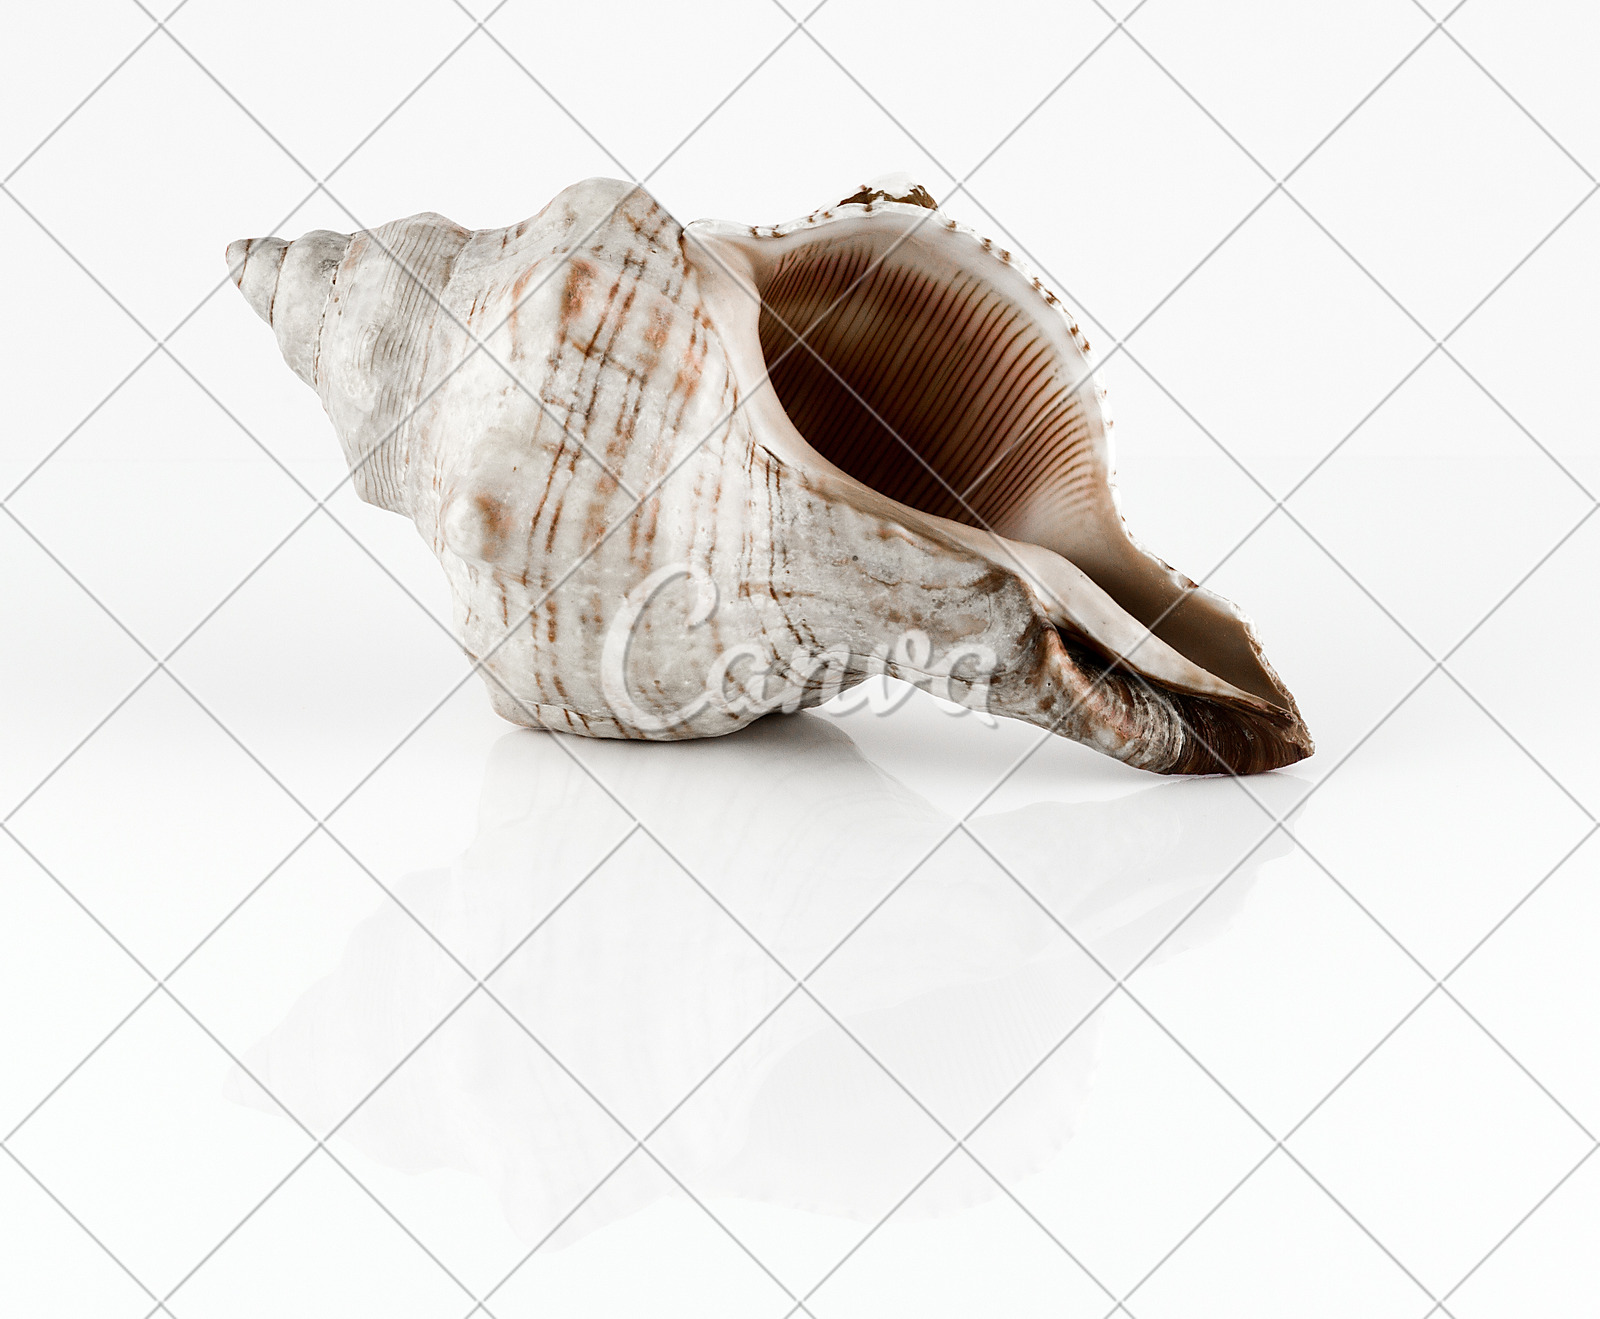 贝壳海螺无脊椎动物自然纪念品螺线软体动物反射微生物摄影